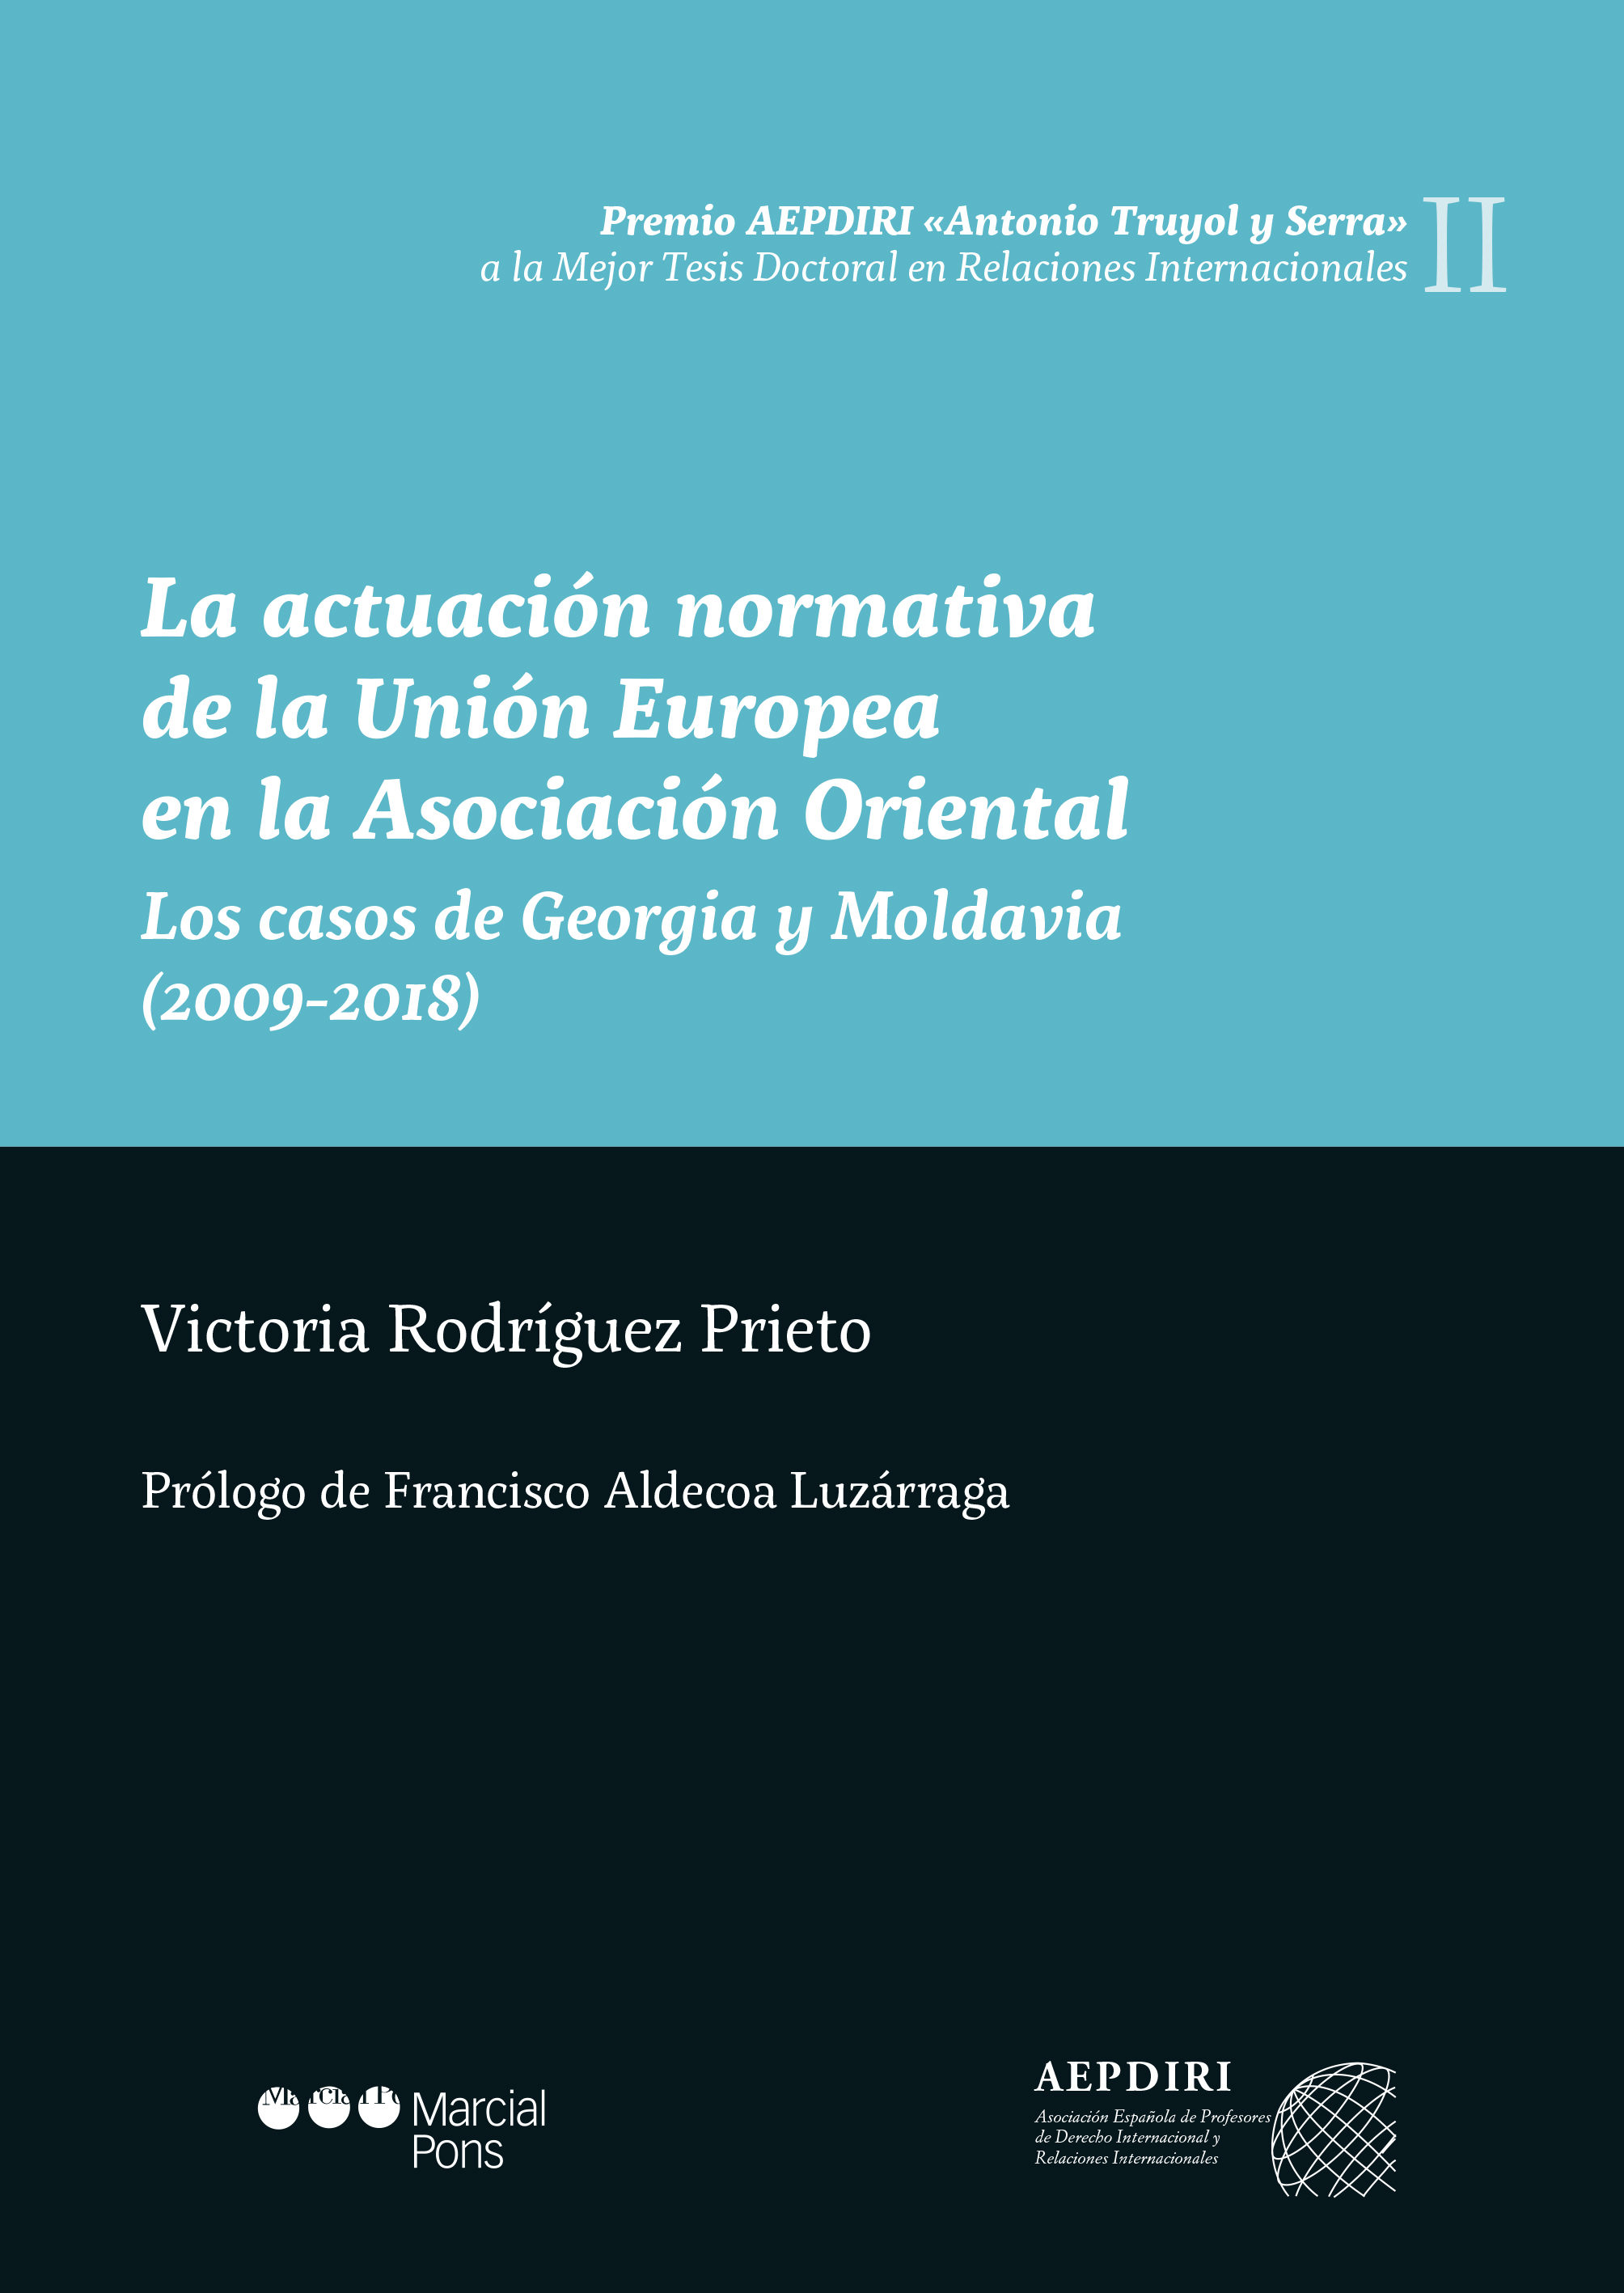 Presentación del libro La actuación normativa de la Unión Europea en la Asociación Oriental: Los casos de Georgia y Moldavia (2009-2018).